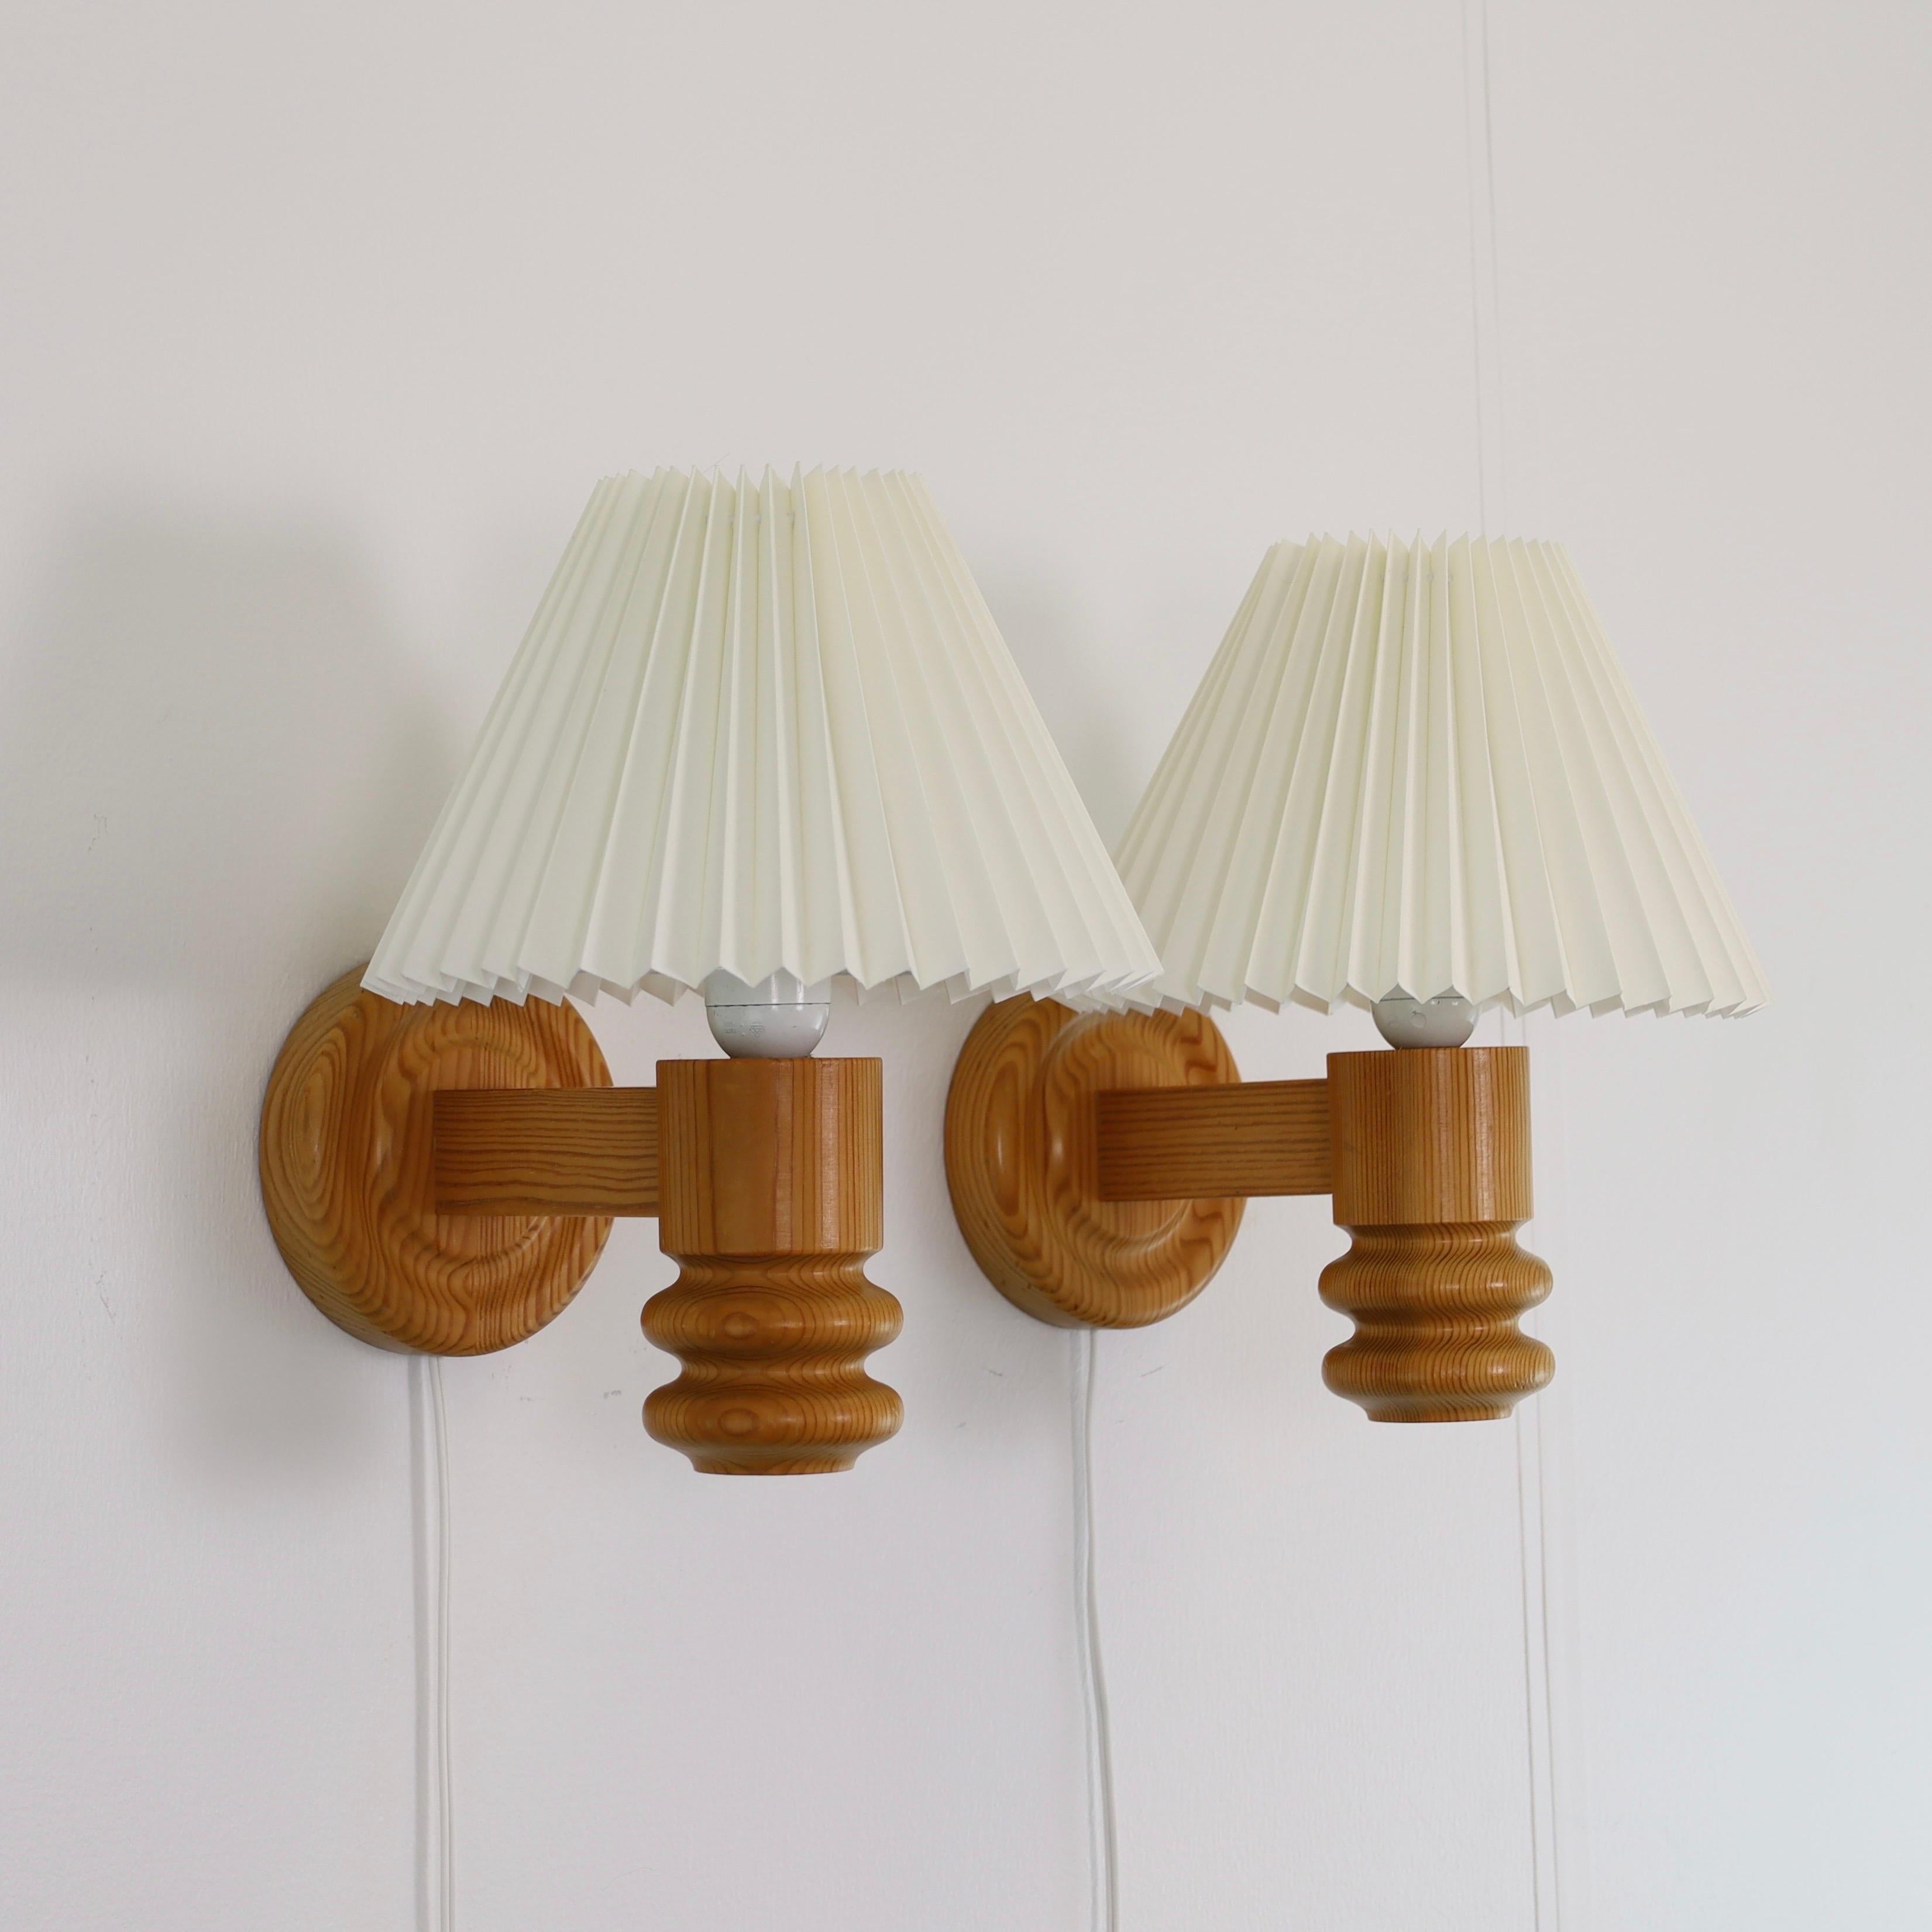 Eine Reihe schwedischer moderner Wandlampen aus Kiefernholz, hergestellt von Solbackens Svarveri in den 1970er Jahren. Ein skandinavischer Touch für ein schönes Zuhause.

* Ein Paar (2) Wandlampen aus Kiefernholz mit weißen plissierten